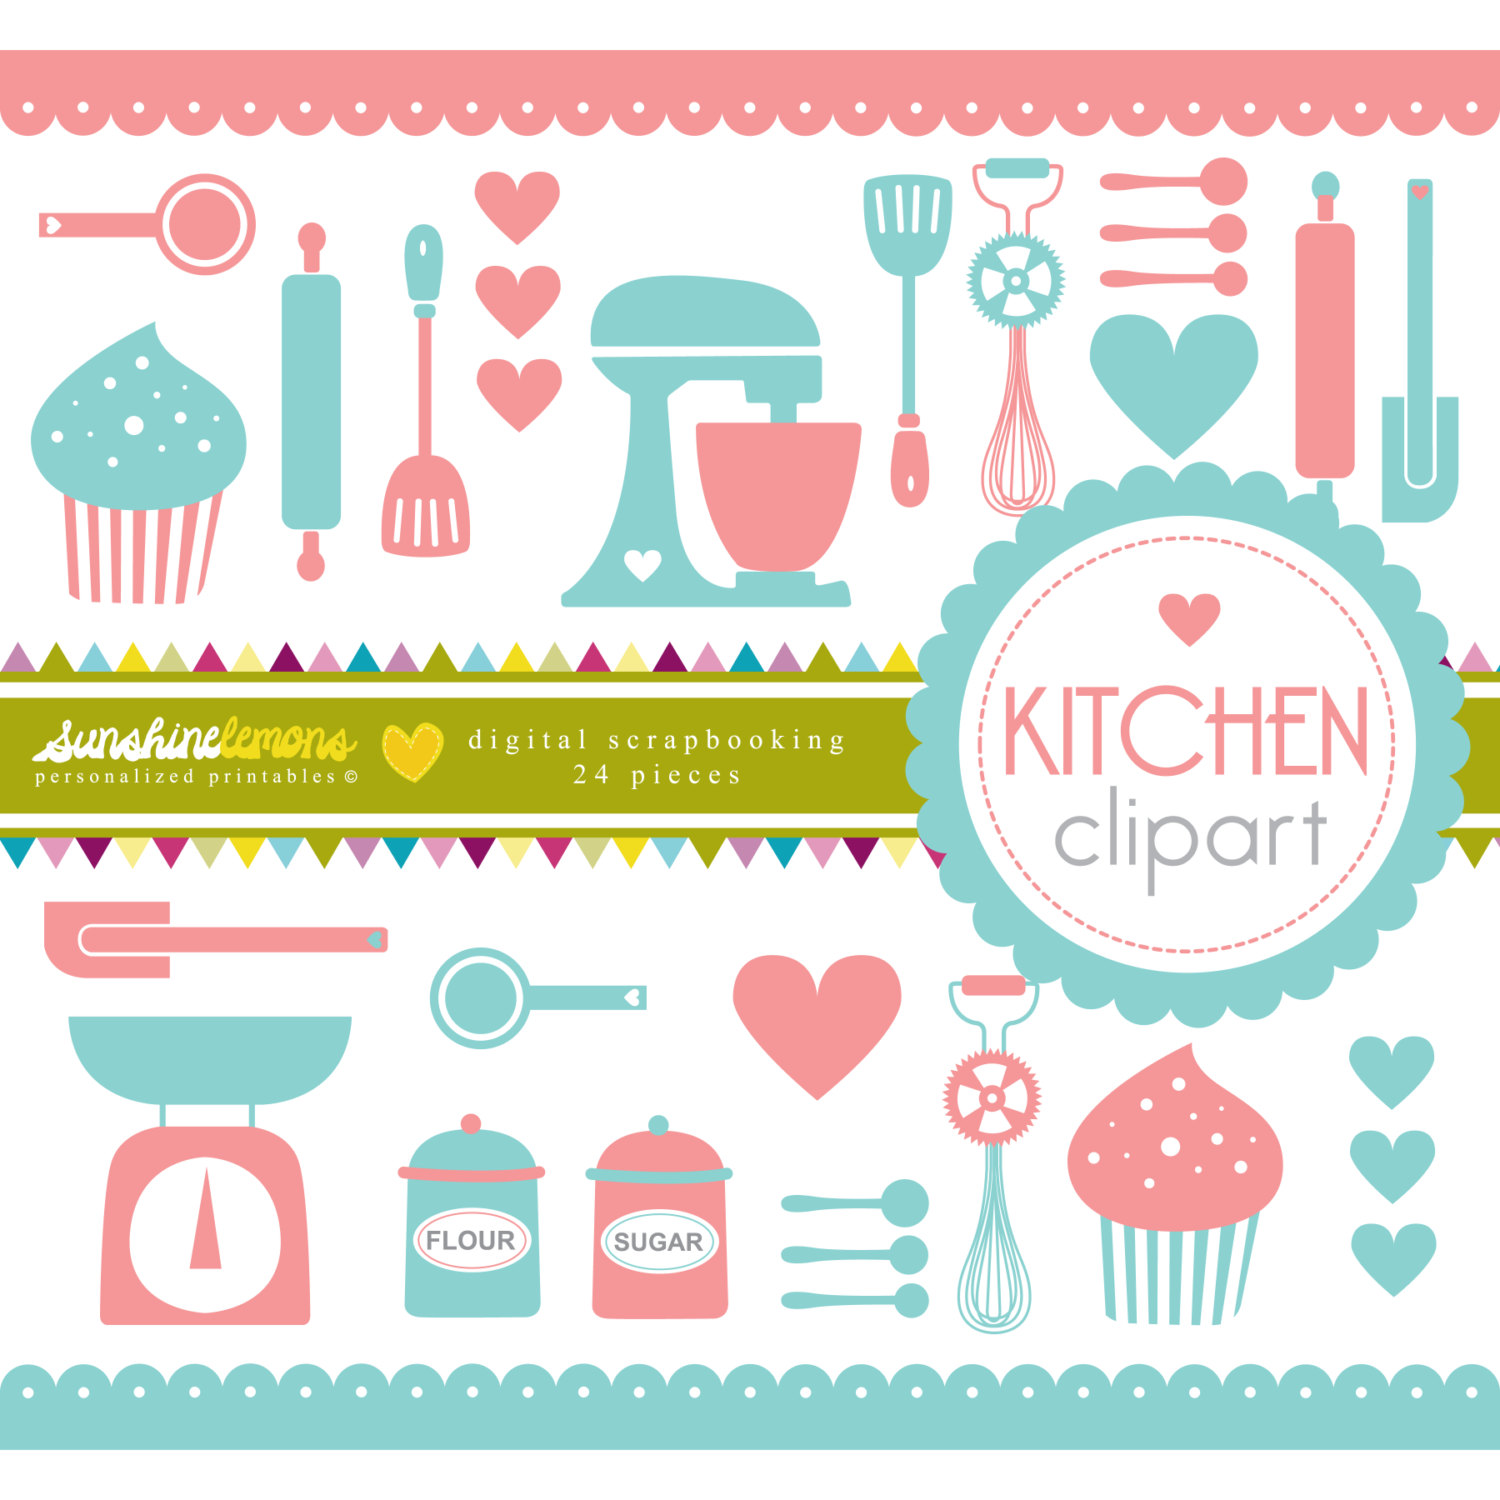 clipart for kitchen utensils - photo #31